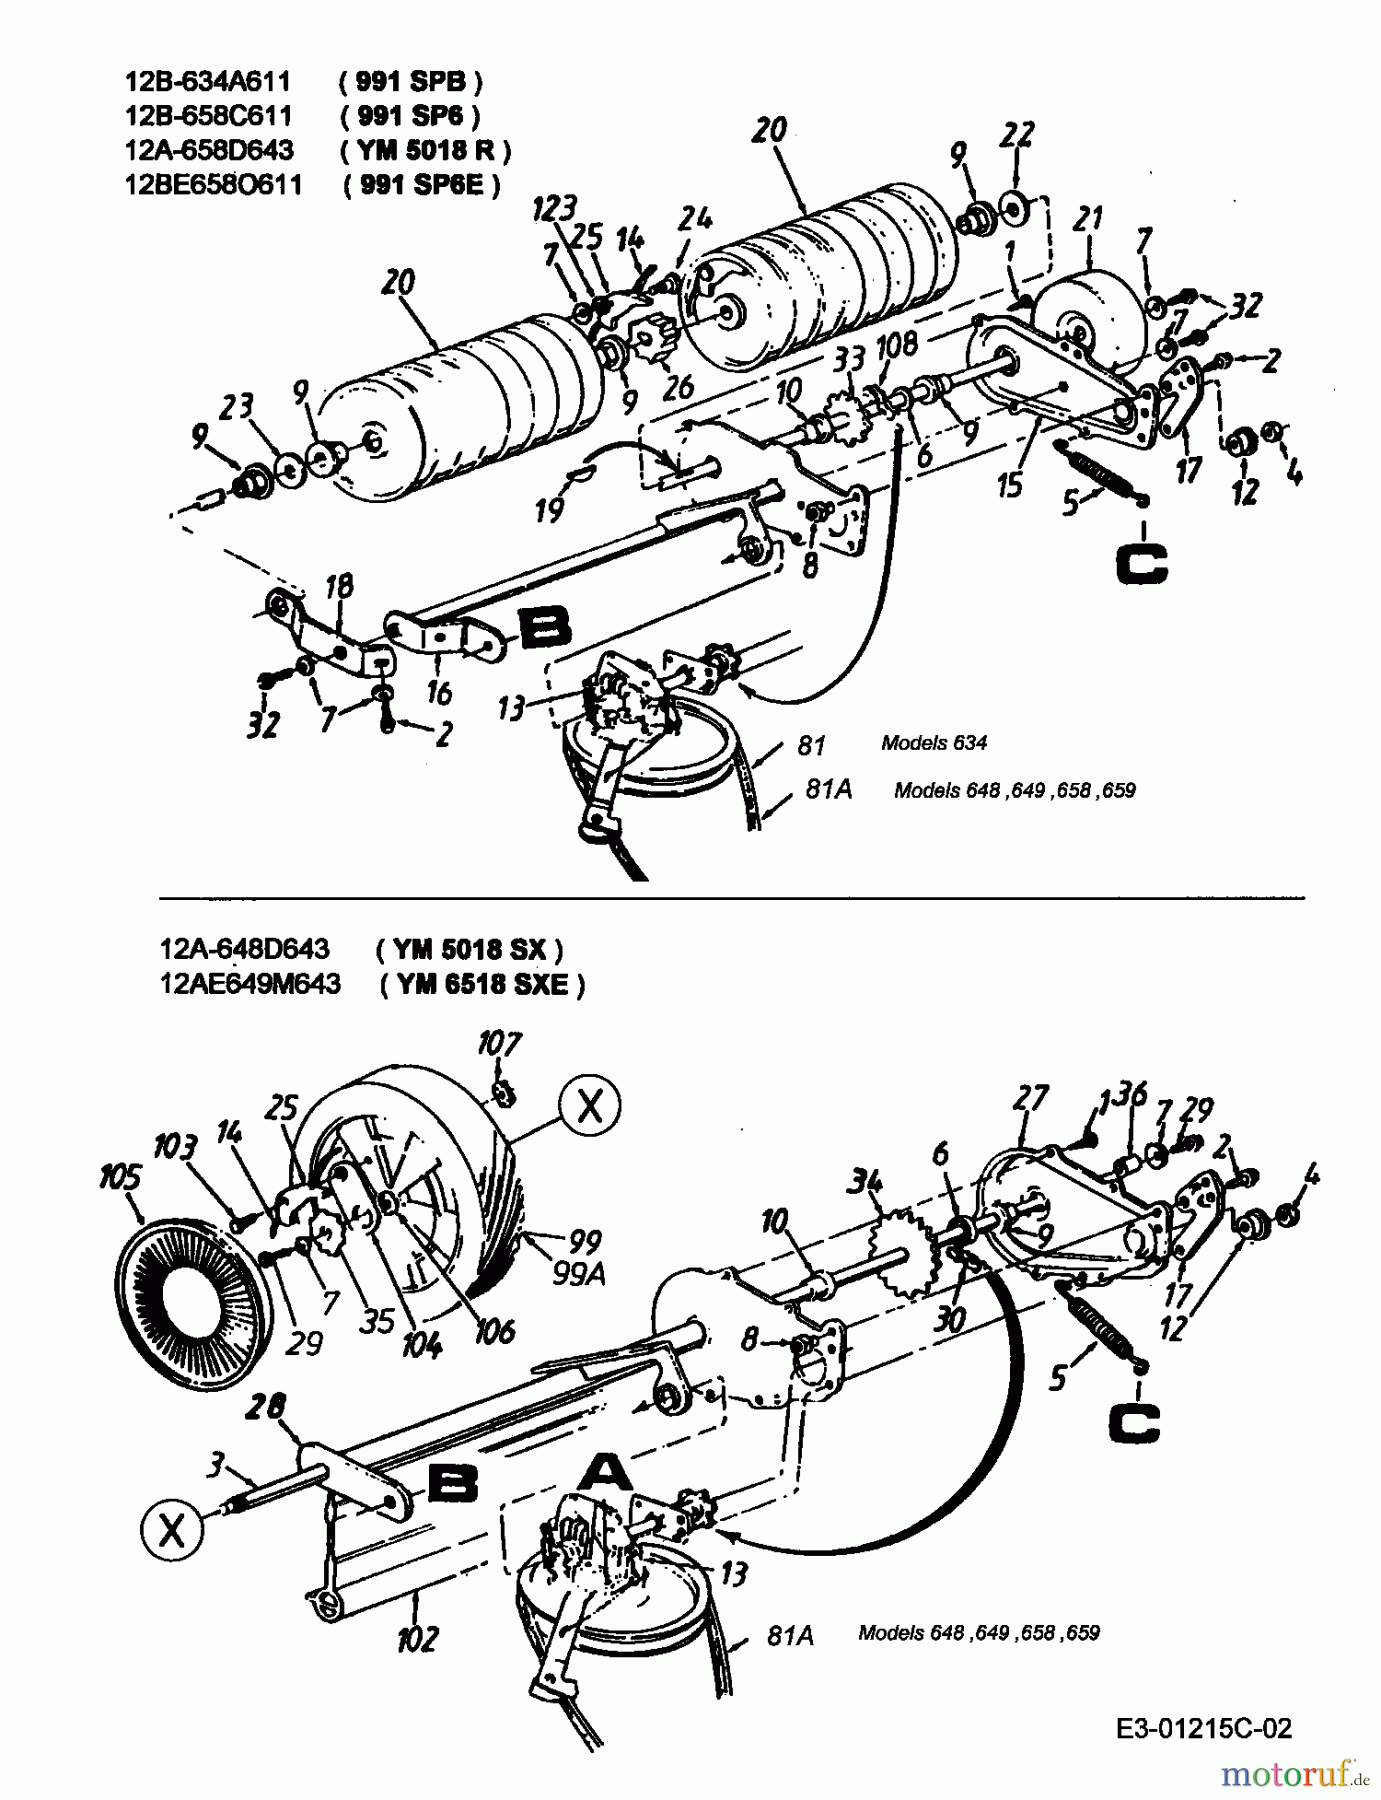  Lawnflite Motormäher mit Antrieb 991 SP 6 E 12BE658O611  (2000) Getriebe, Rollen, Räder